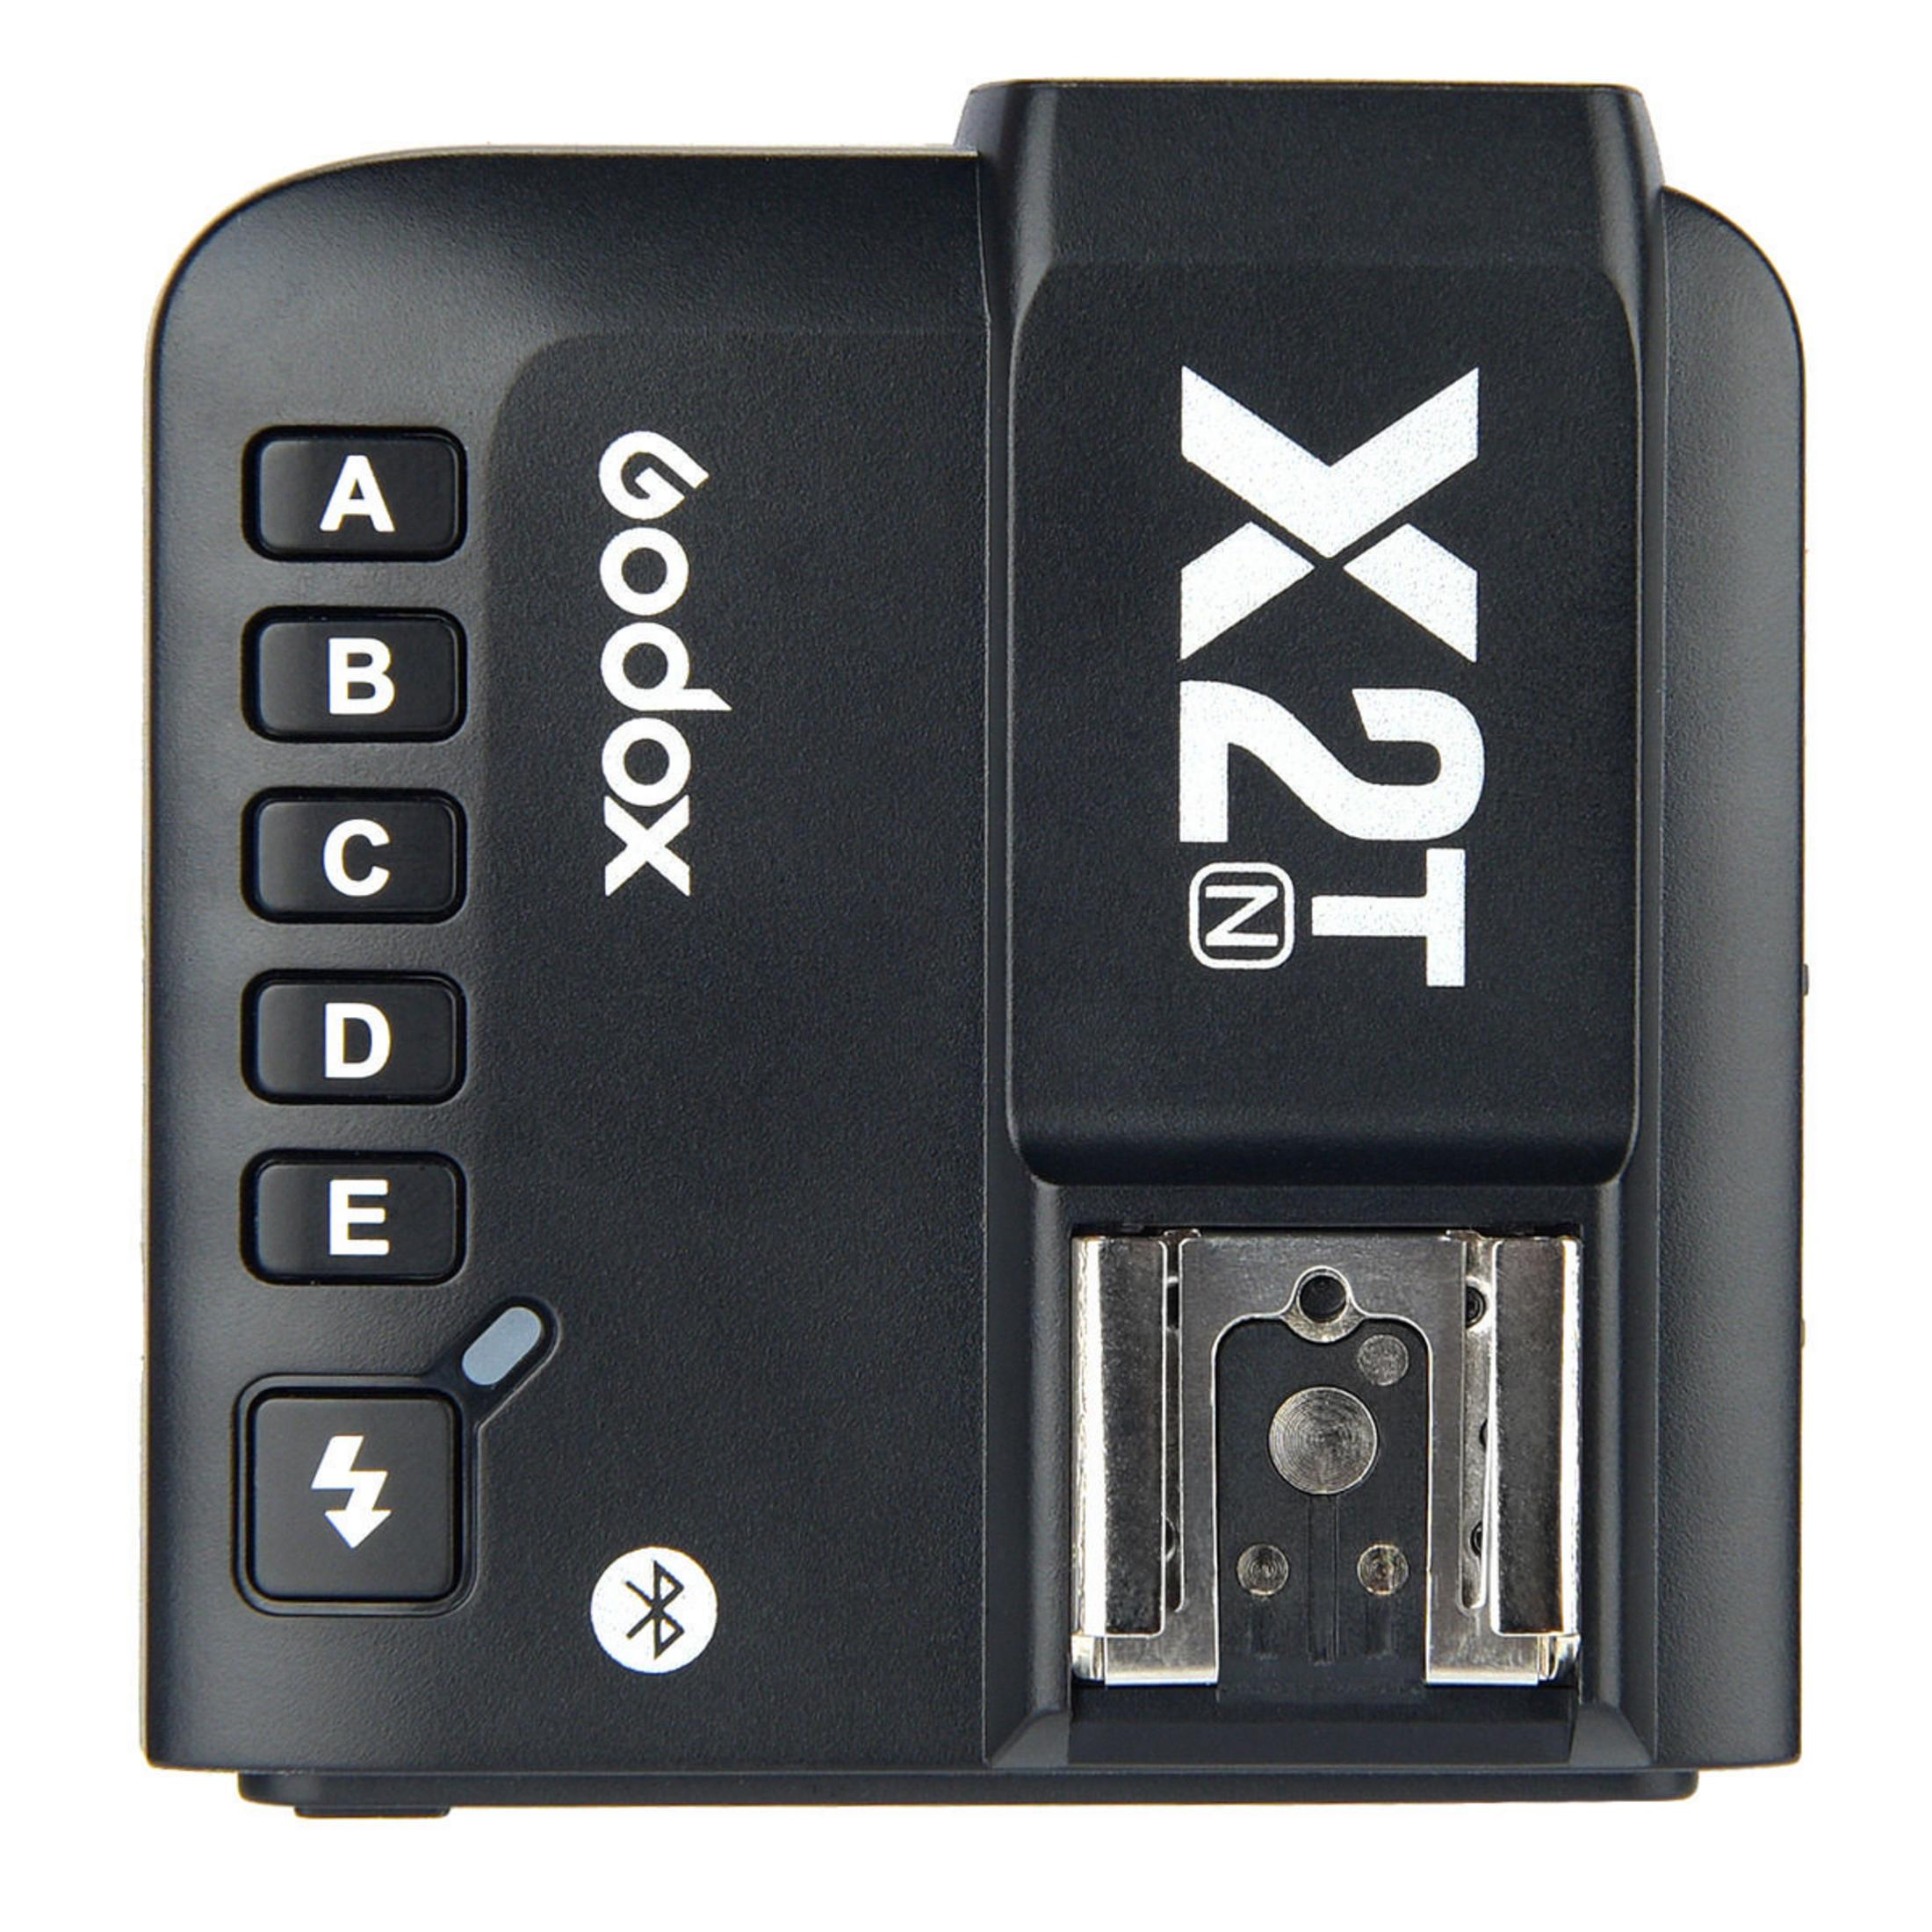 2.4G GODOX für Nikon X2 Flash Trigger TTL Nikon